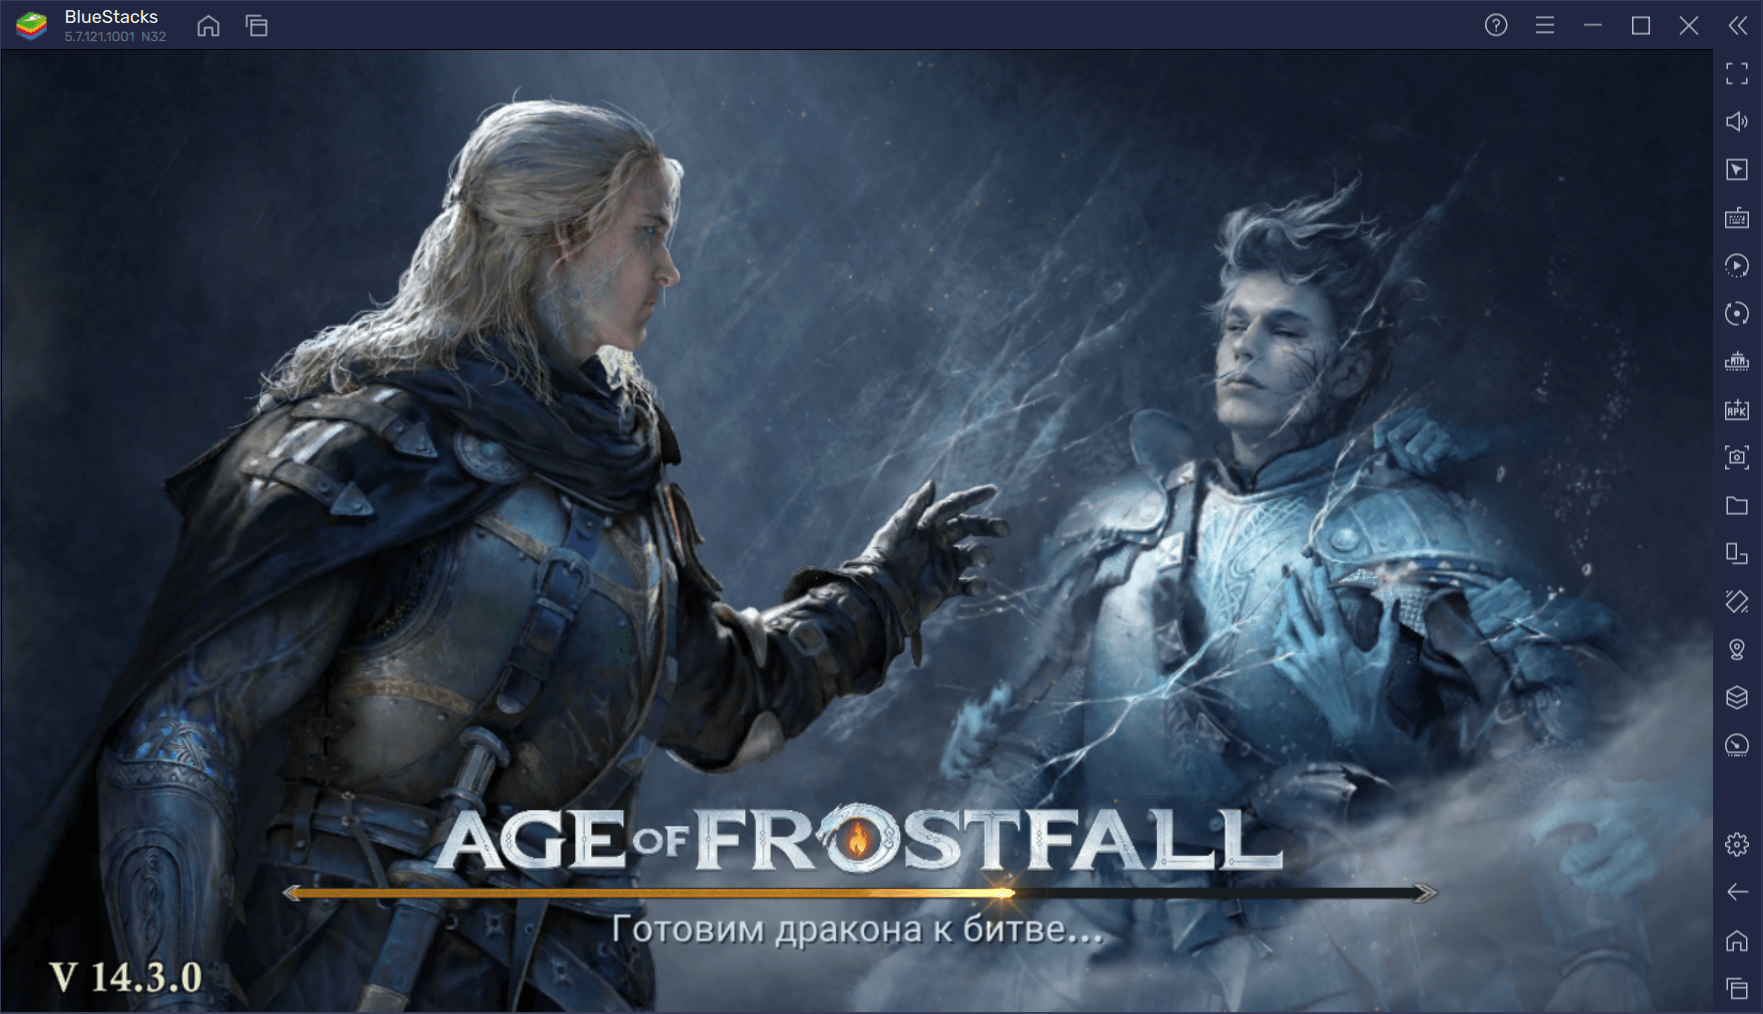 Как улучшить геймплей Age of Frostfall, играя на ПК с BlueStacks?